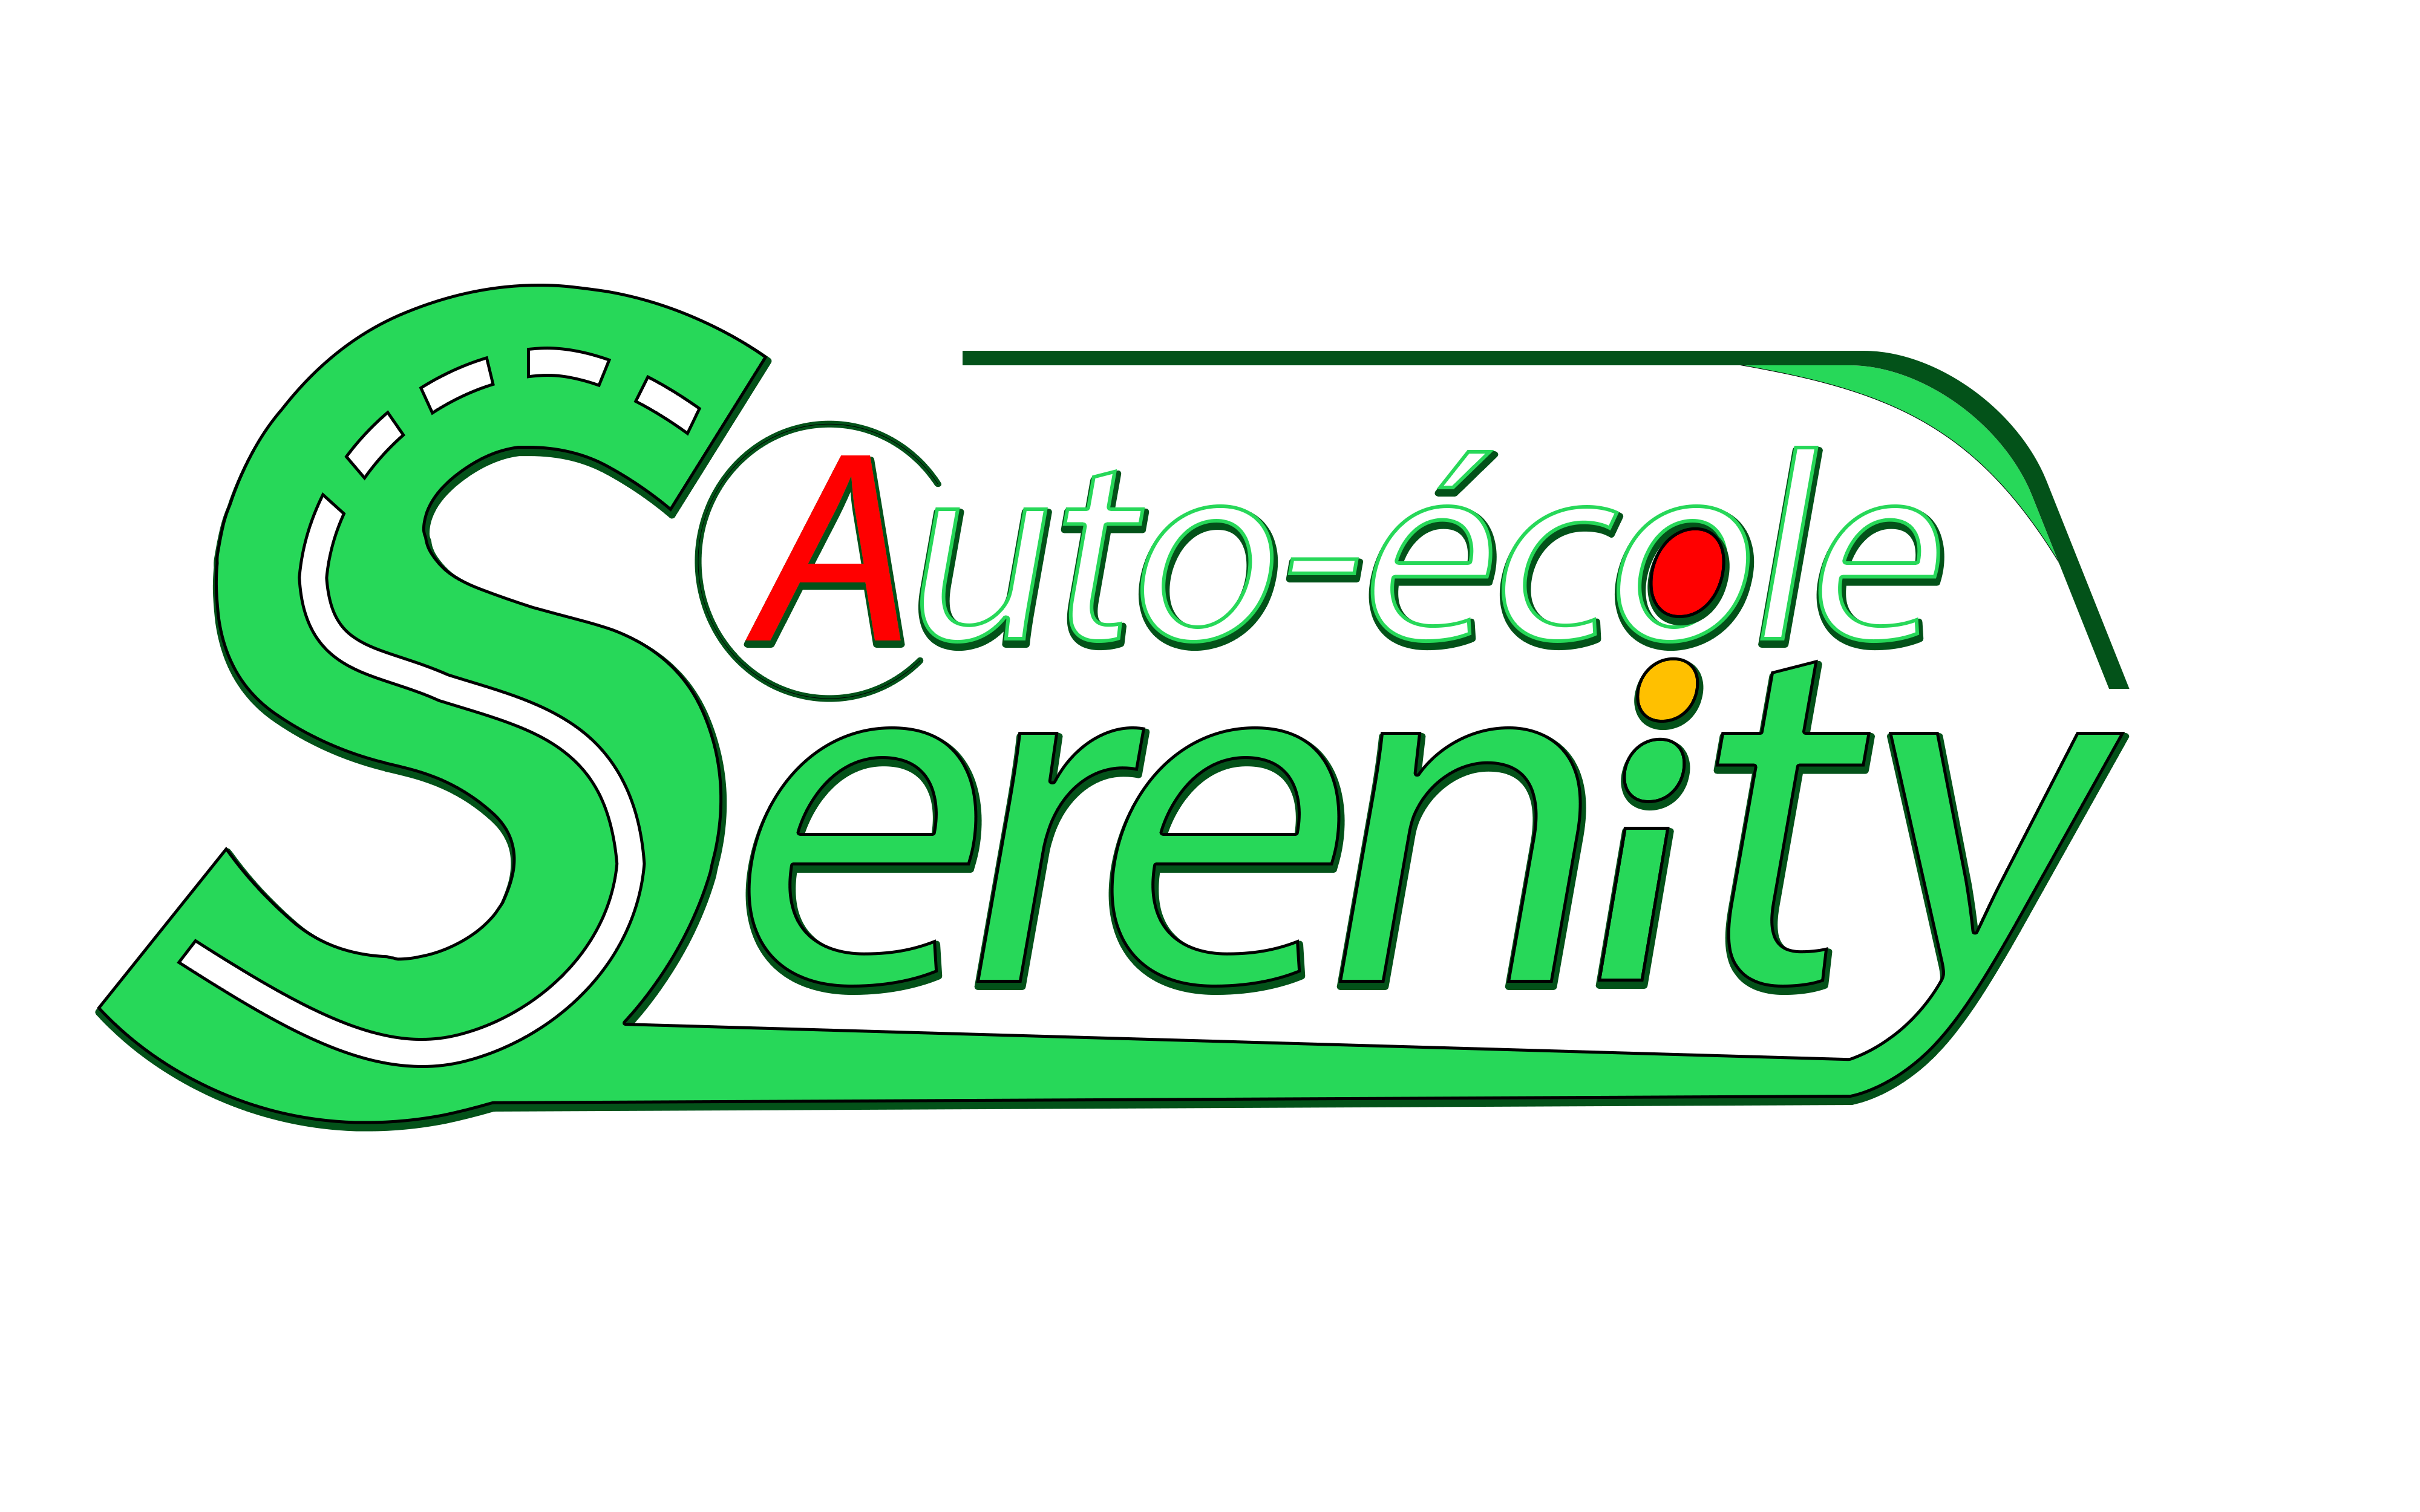 Auto-école Serenity